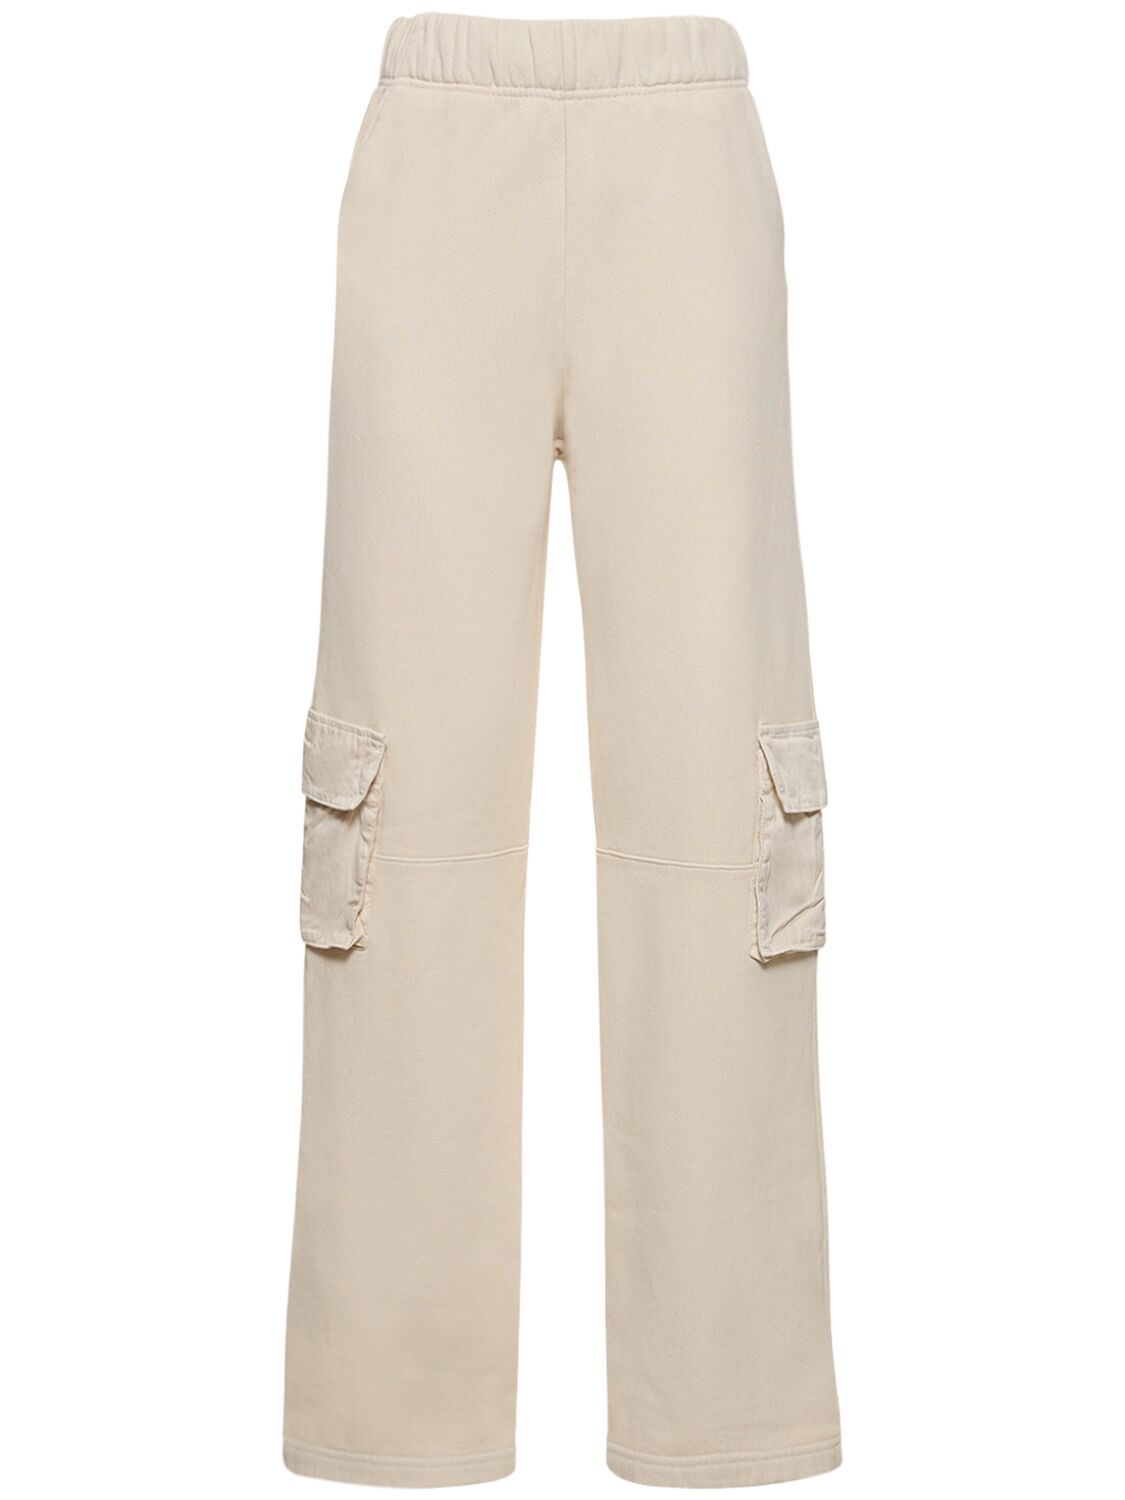 Les Tien Chandra Classico工装裤 In White